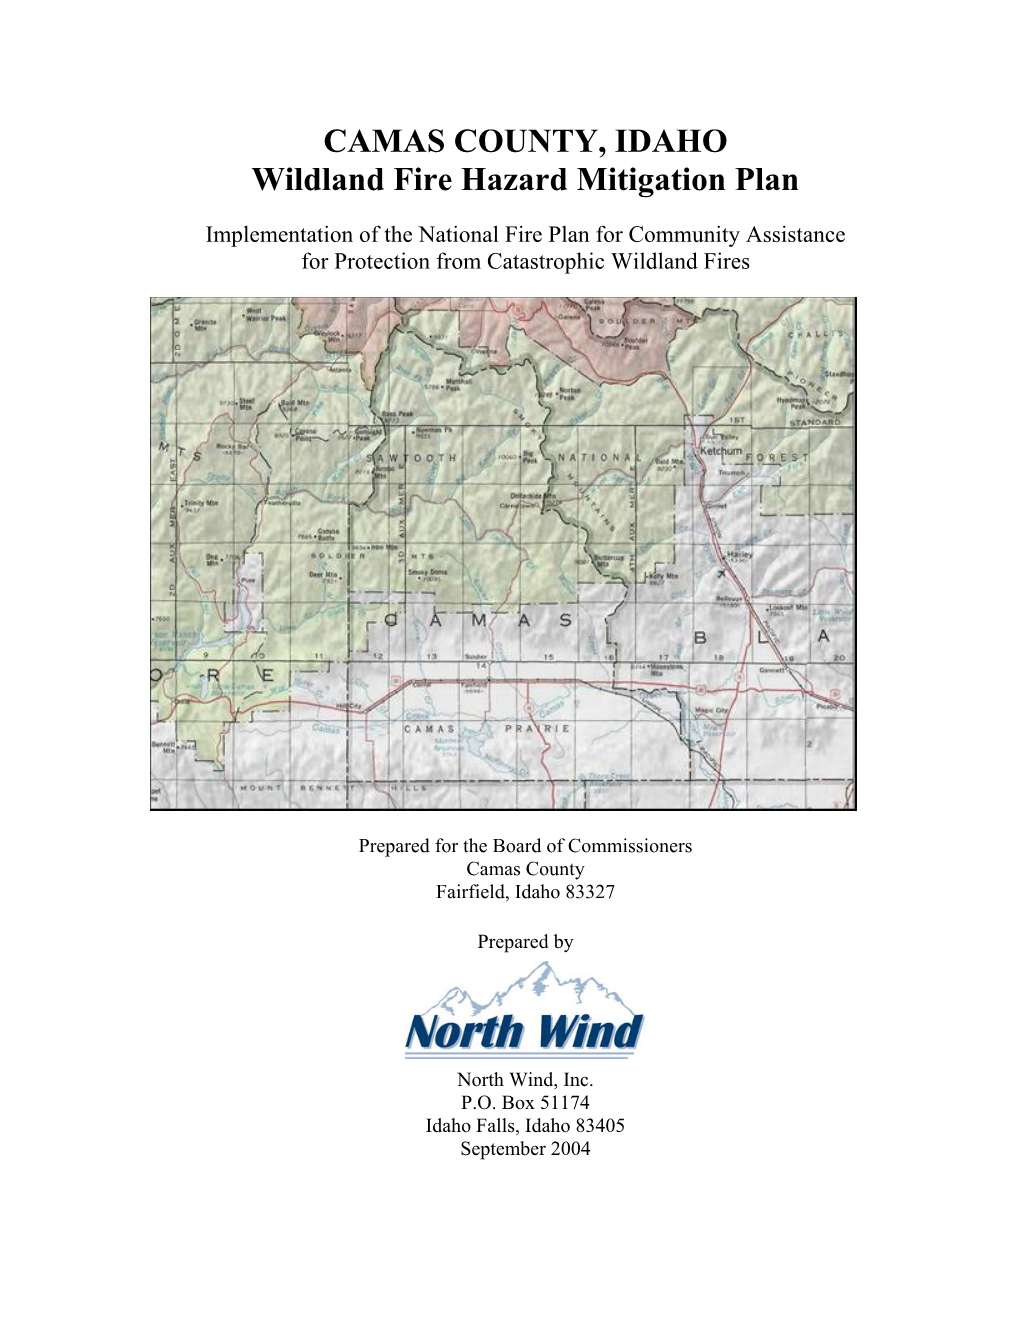 CAMAS COUNTY, IDAHO Wildland Fire Hazard Mitigation Plan